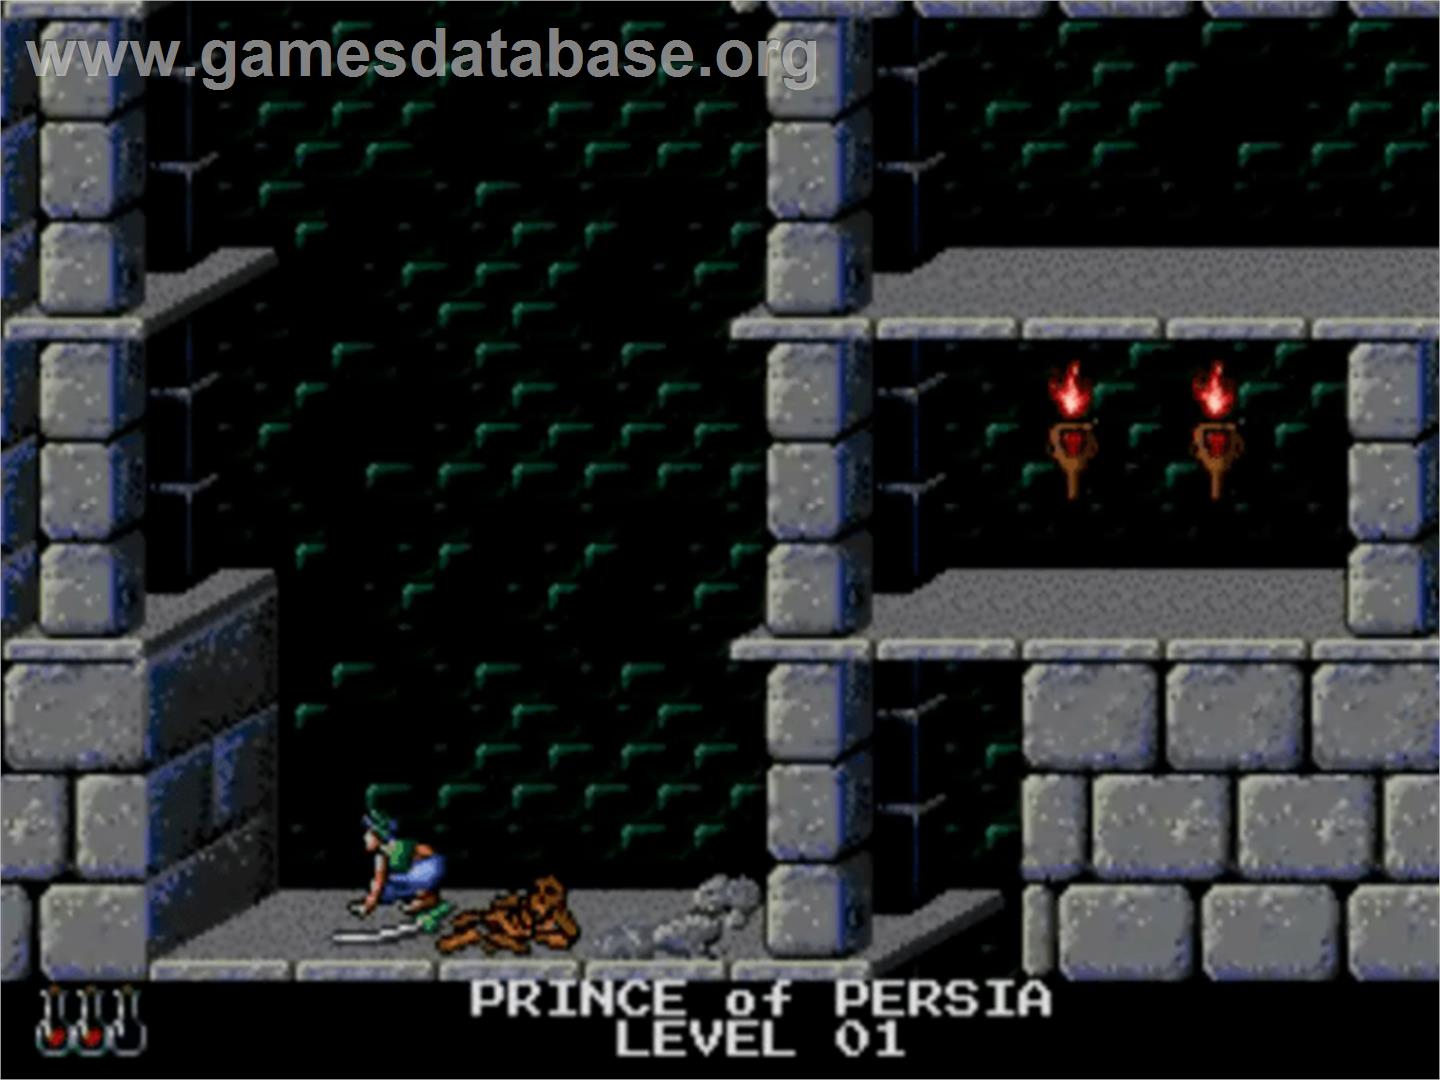 Prince of Persia - NEC TurboGrafx CD - Artwork - In Game